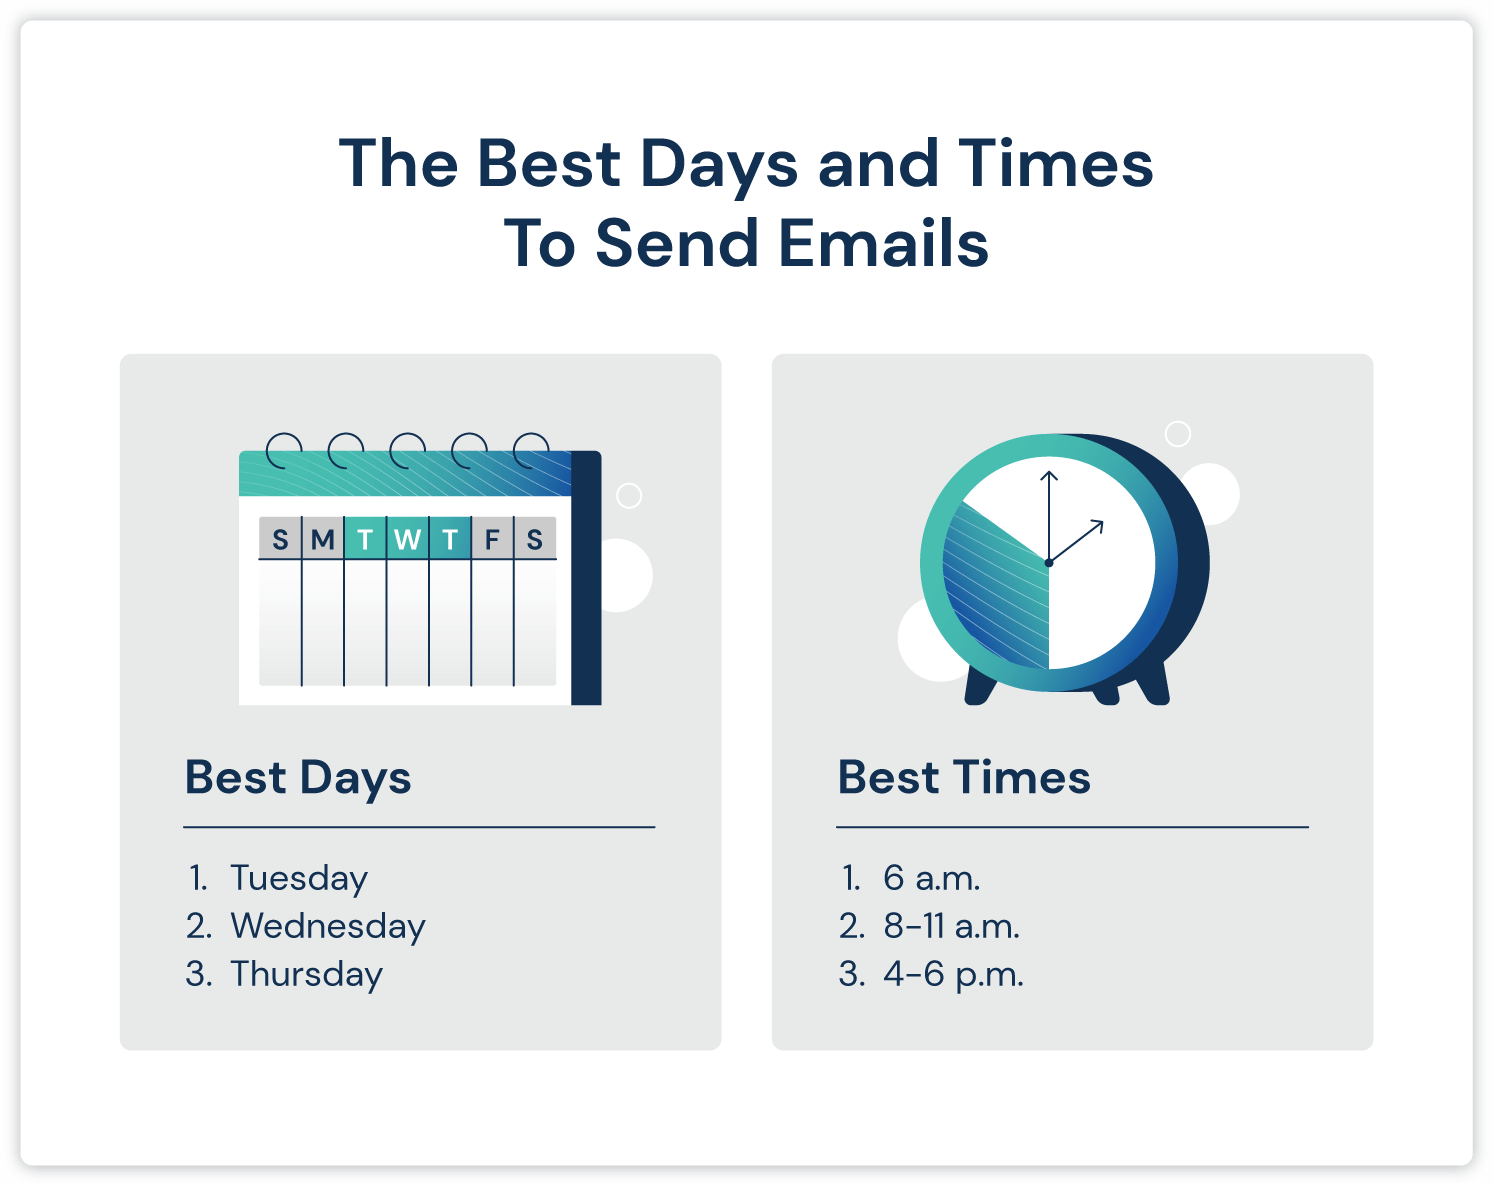 Diagramm der besten Tage und Zeiten zum Versenden von E-Mails